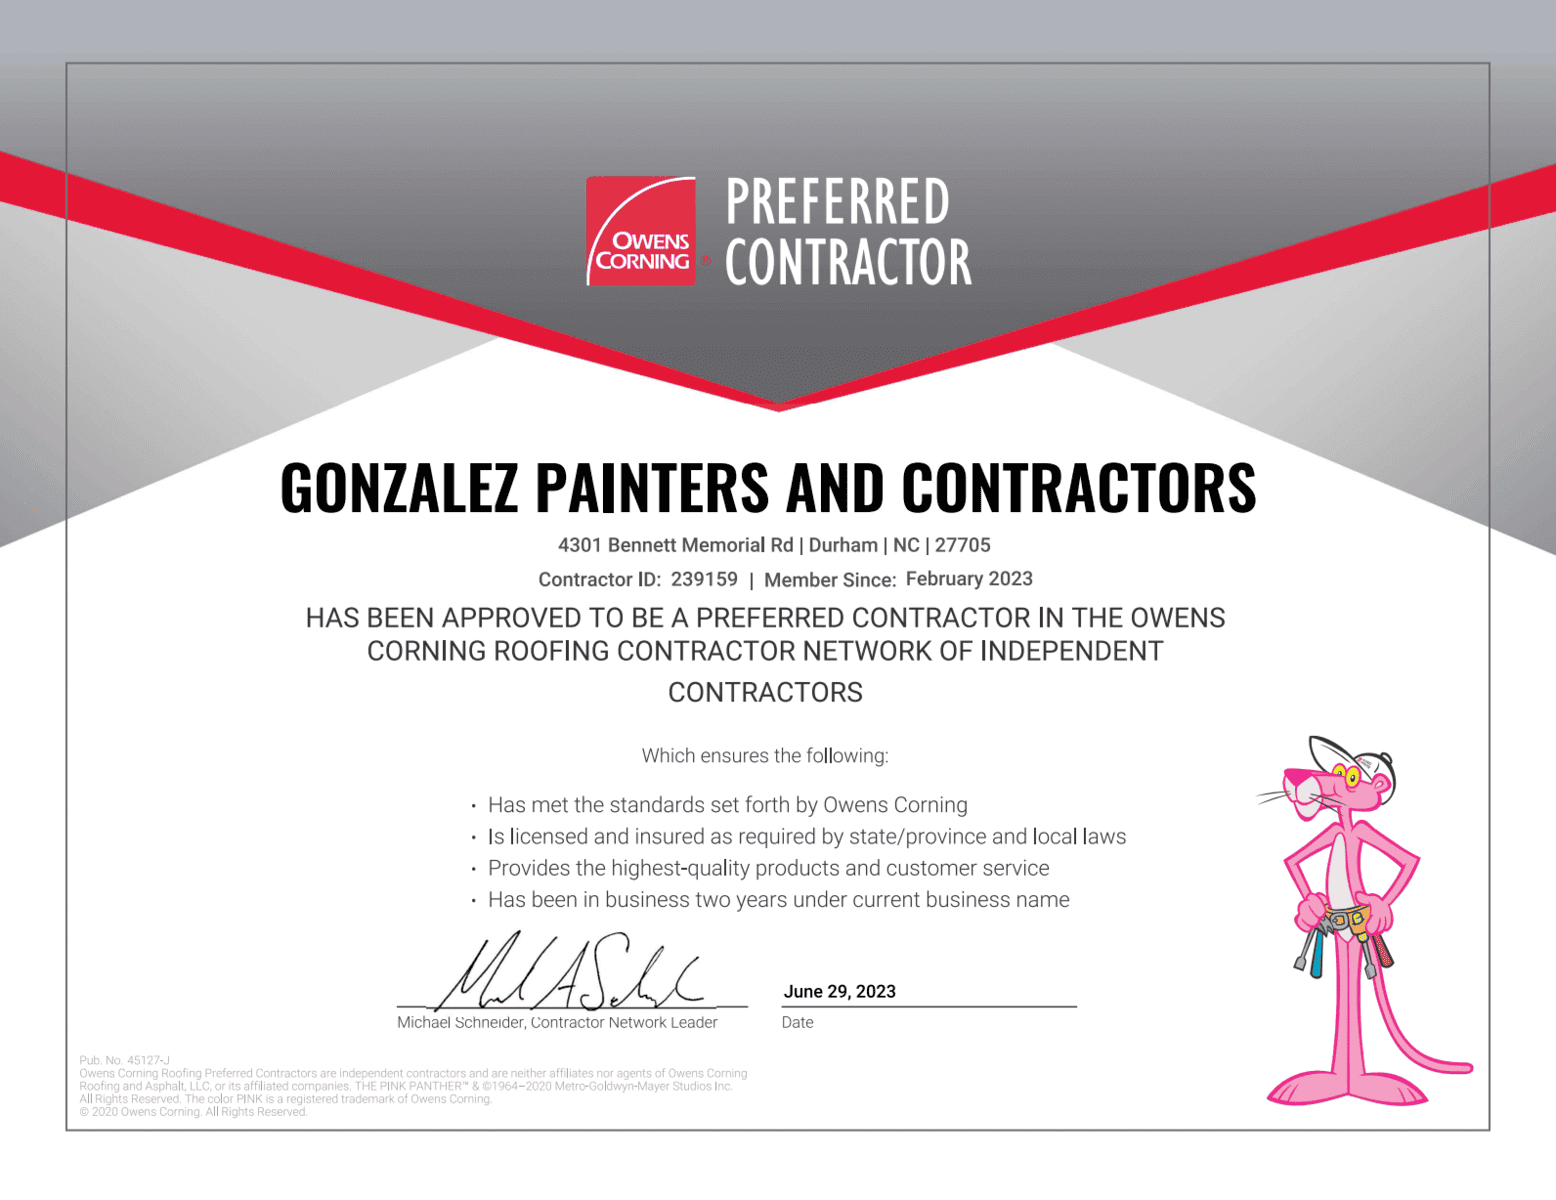 Preferred Contractor - Gonzalez Painters